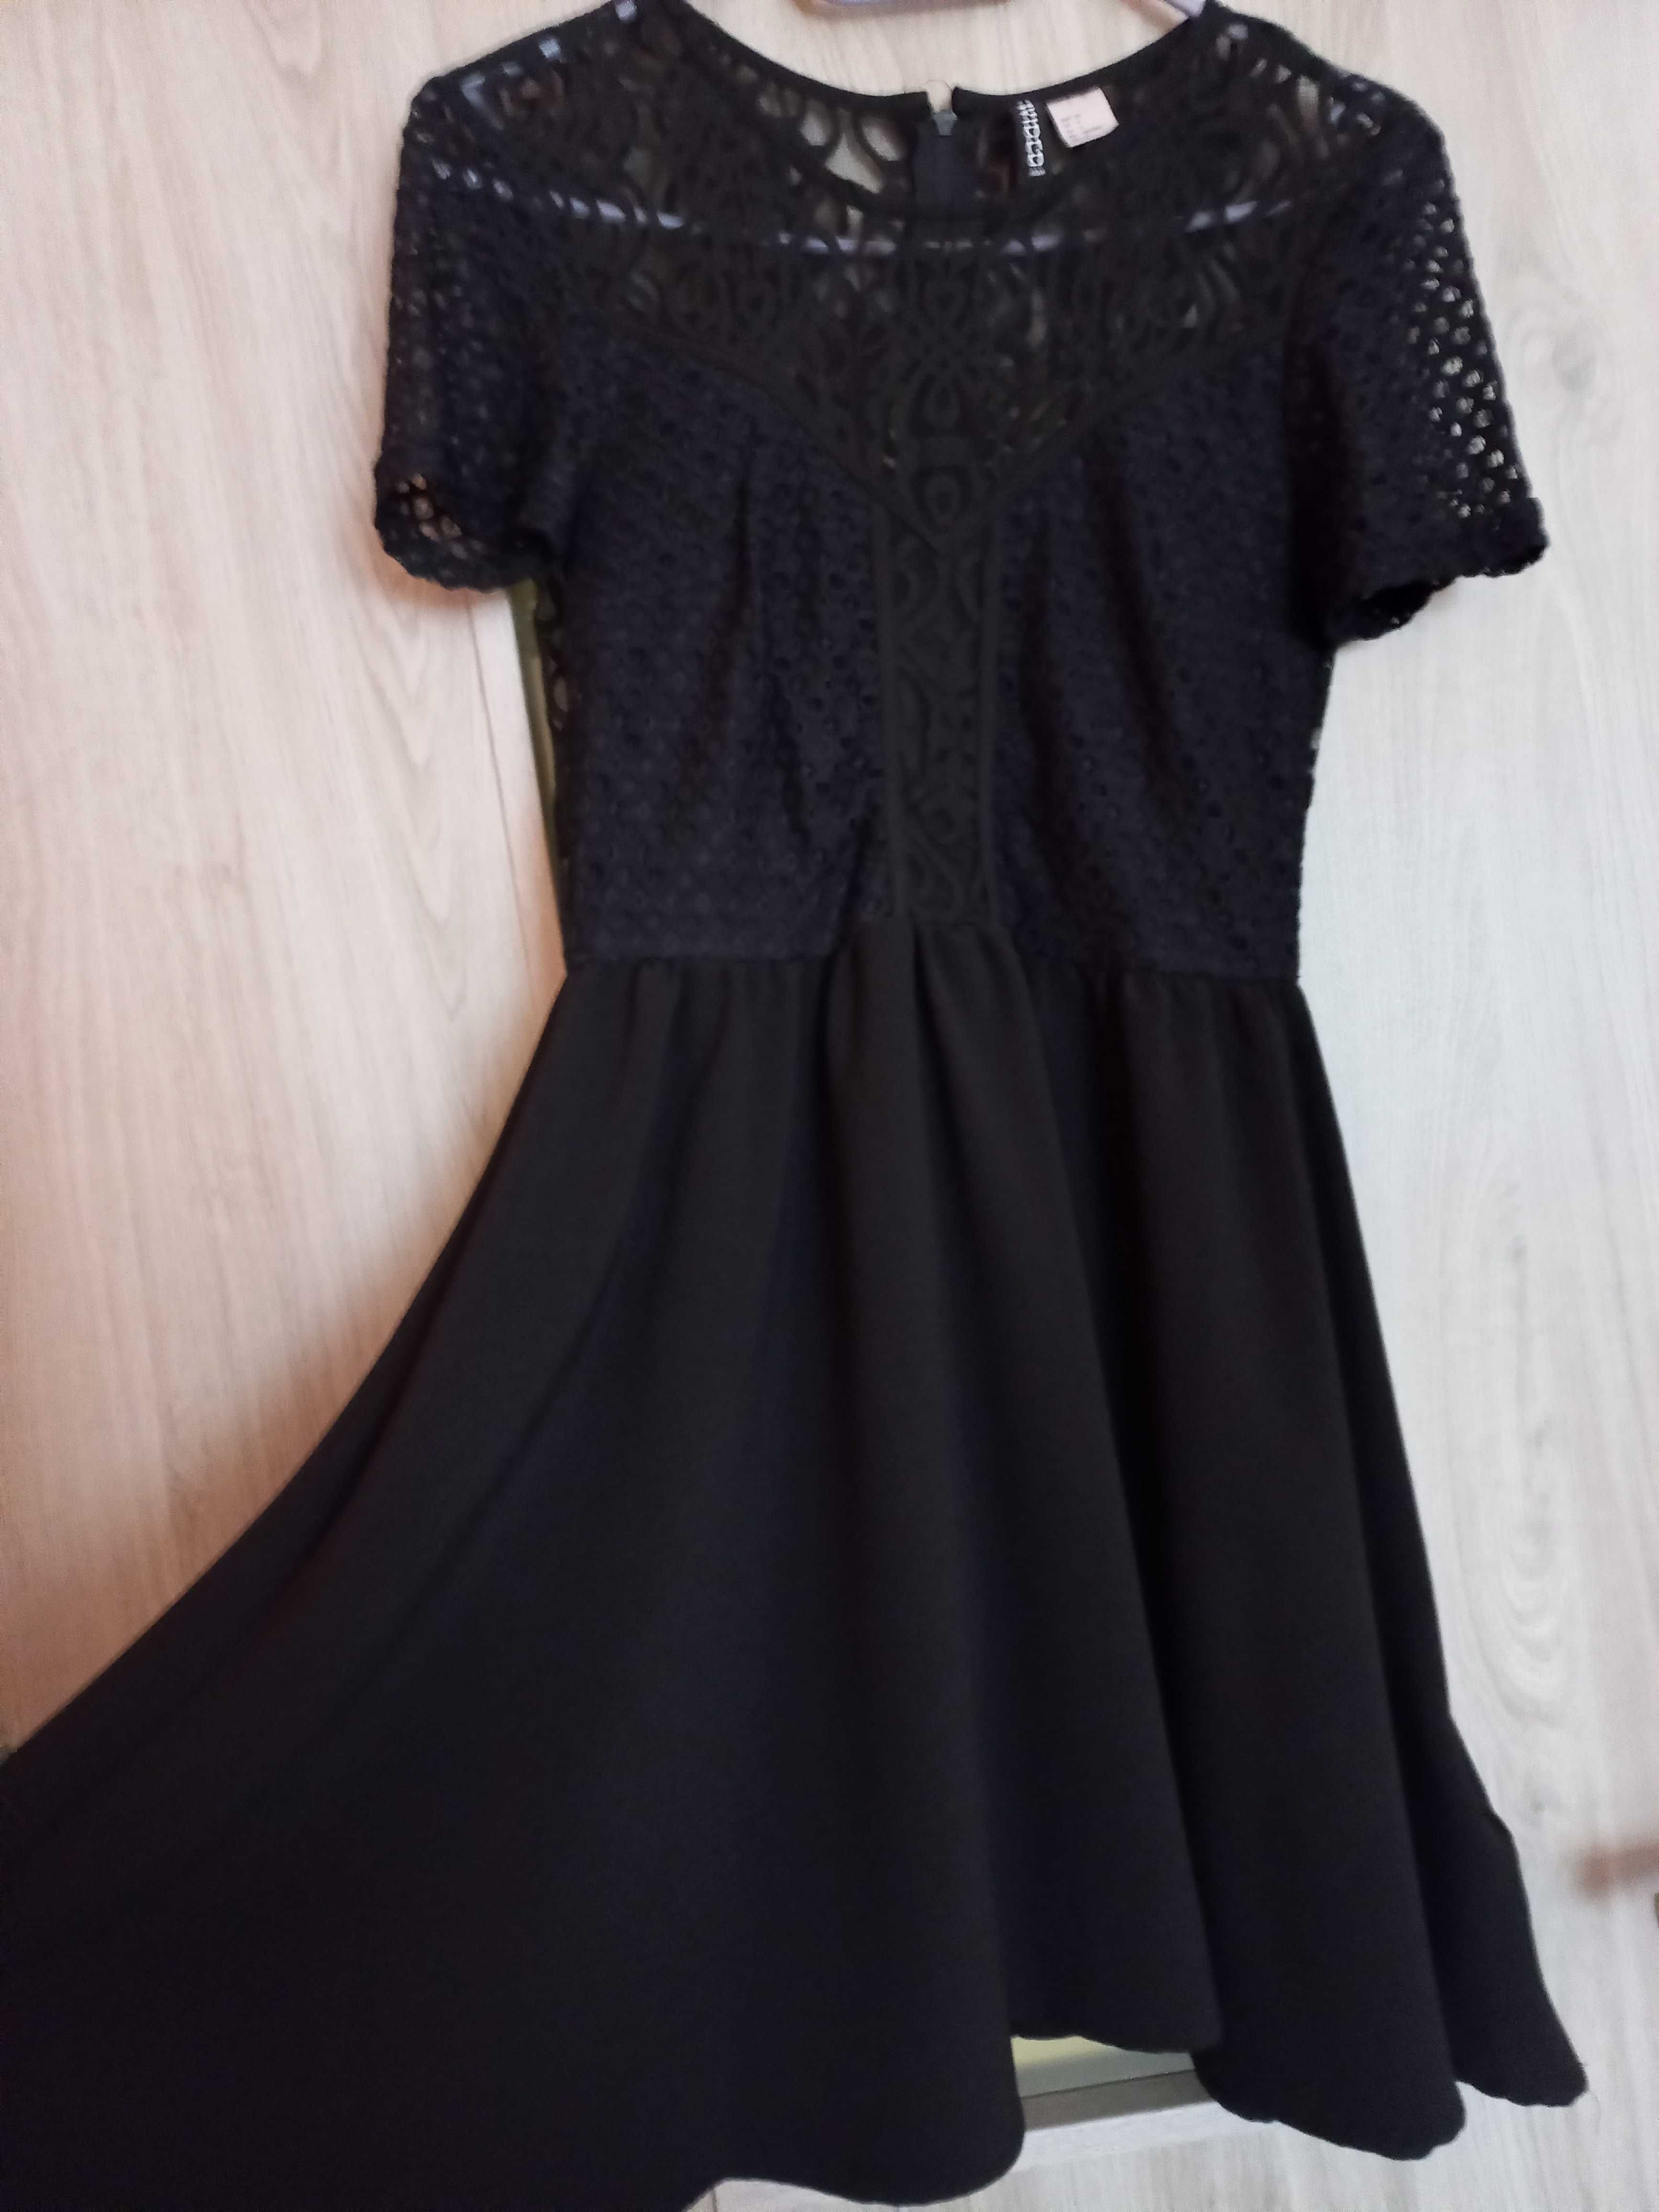 czarna sukienka koronkowa r. 36 HM